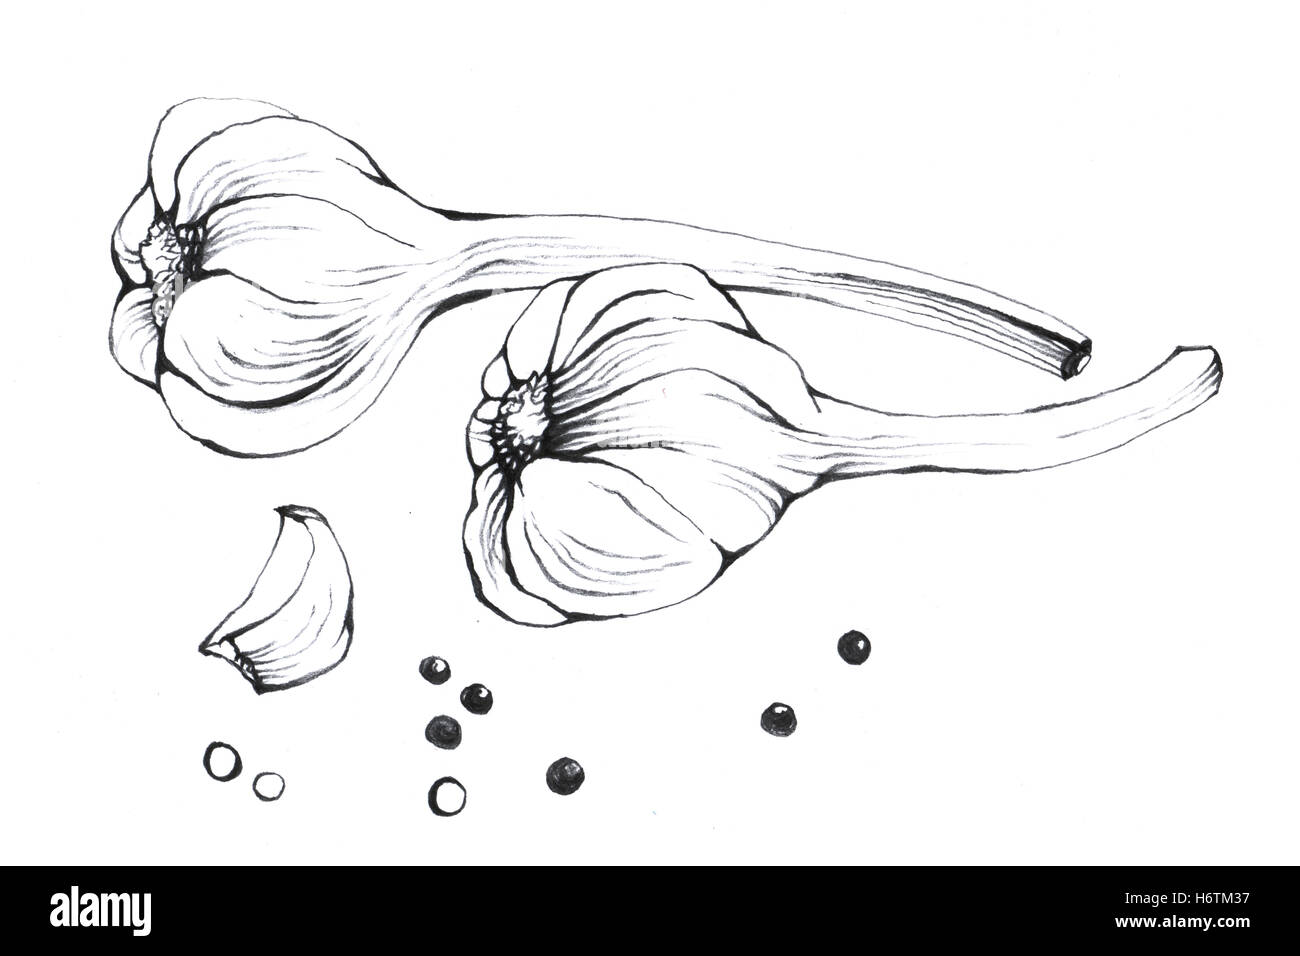 Knoblauch. Hand gezeichnet schwarz / weiß Darstellung Gemüse auf weißem Hintergrund. Stockfoto